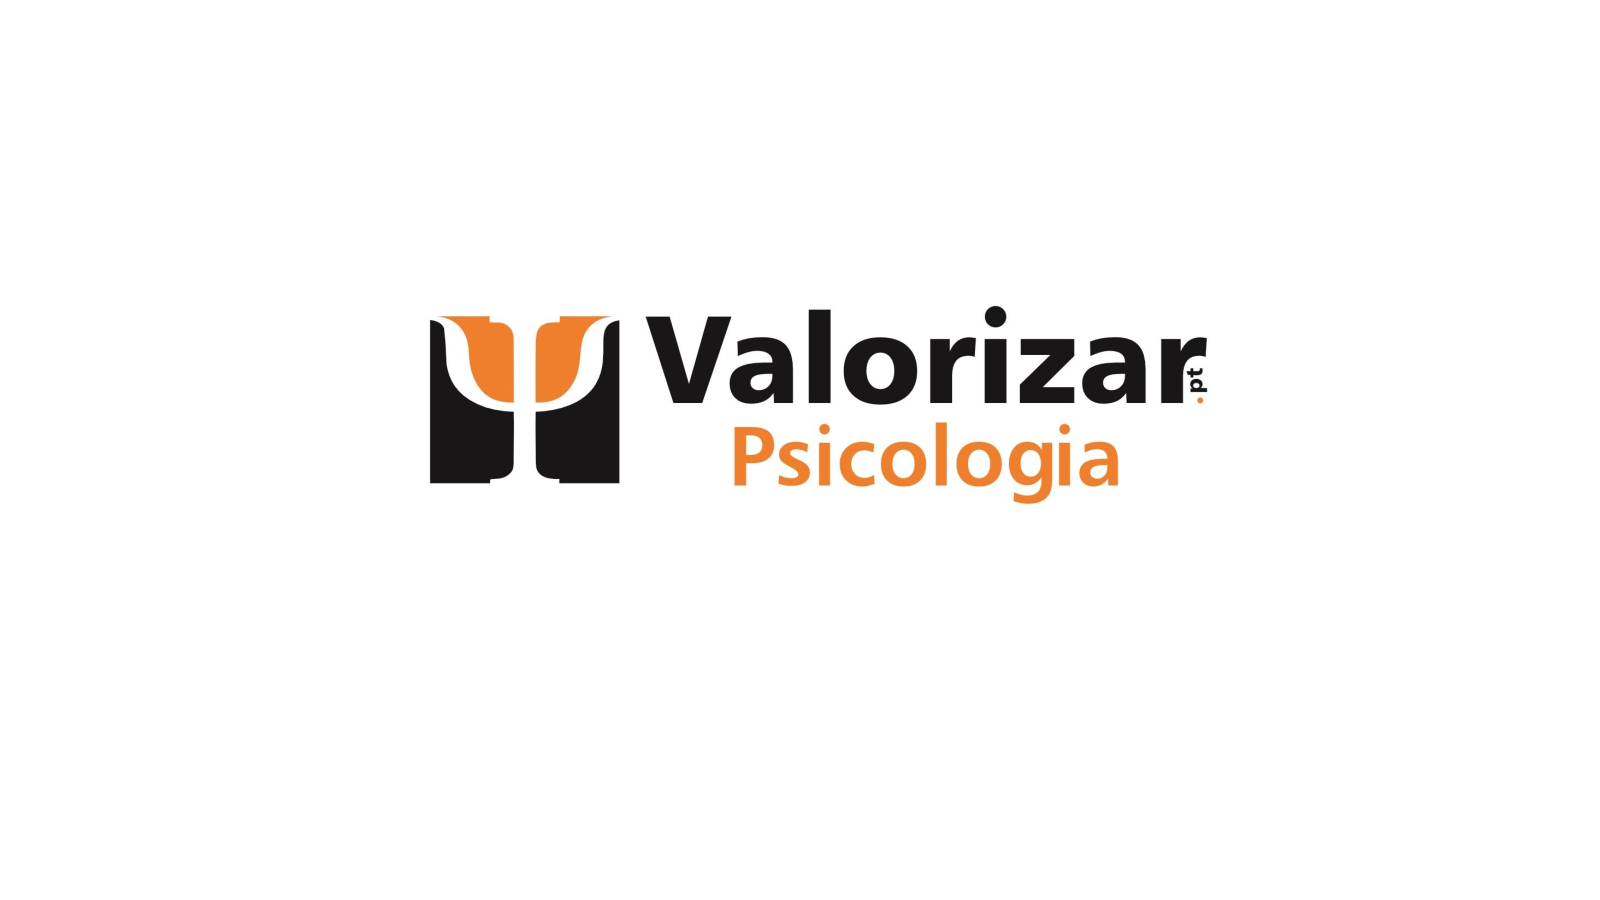 Valorizar - Psicologia